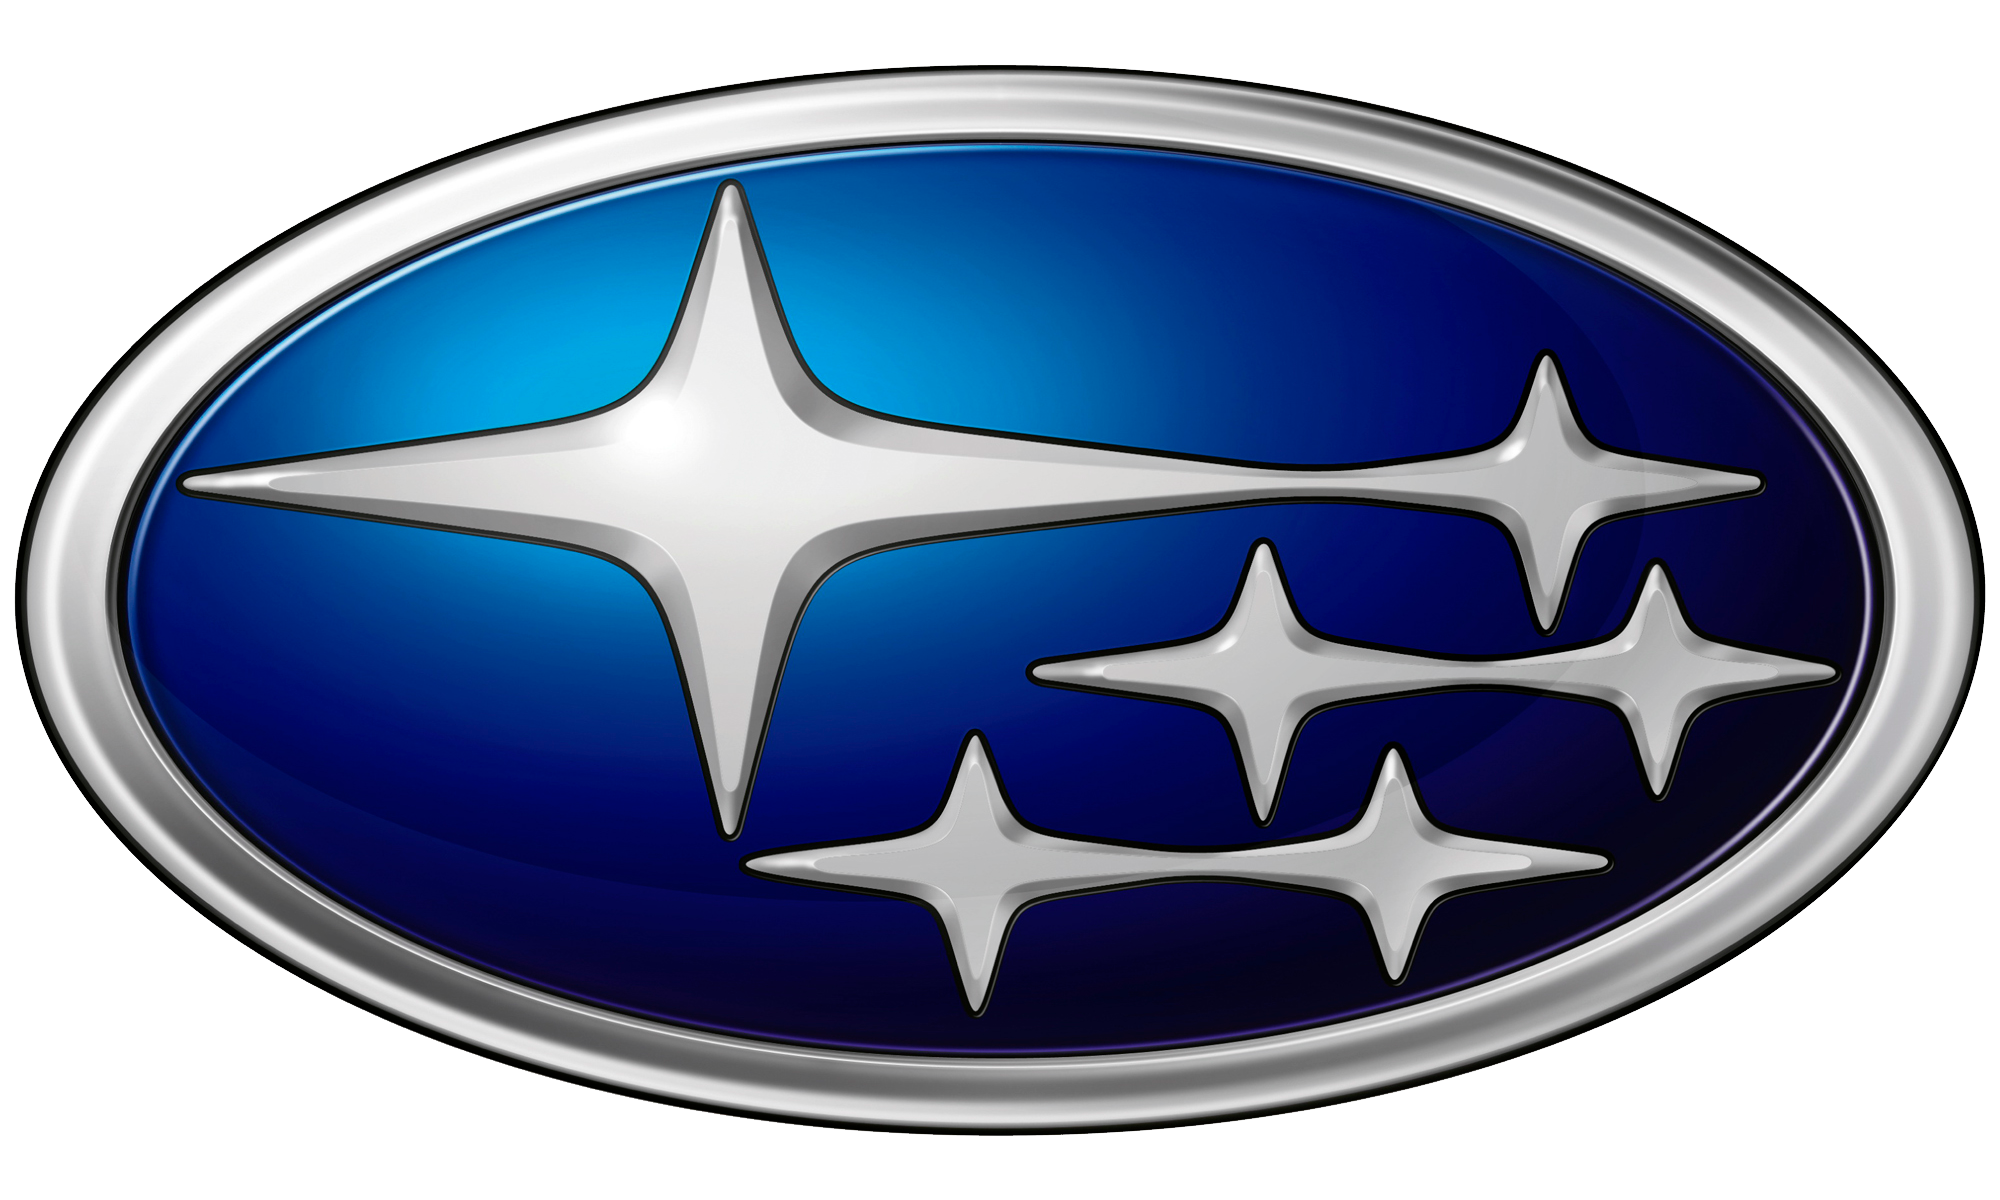 Subaru Logo PNG Photos